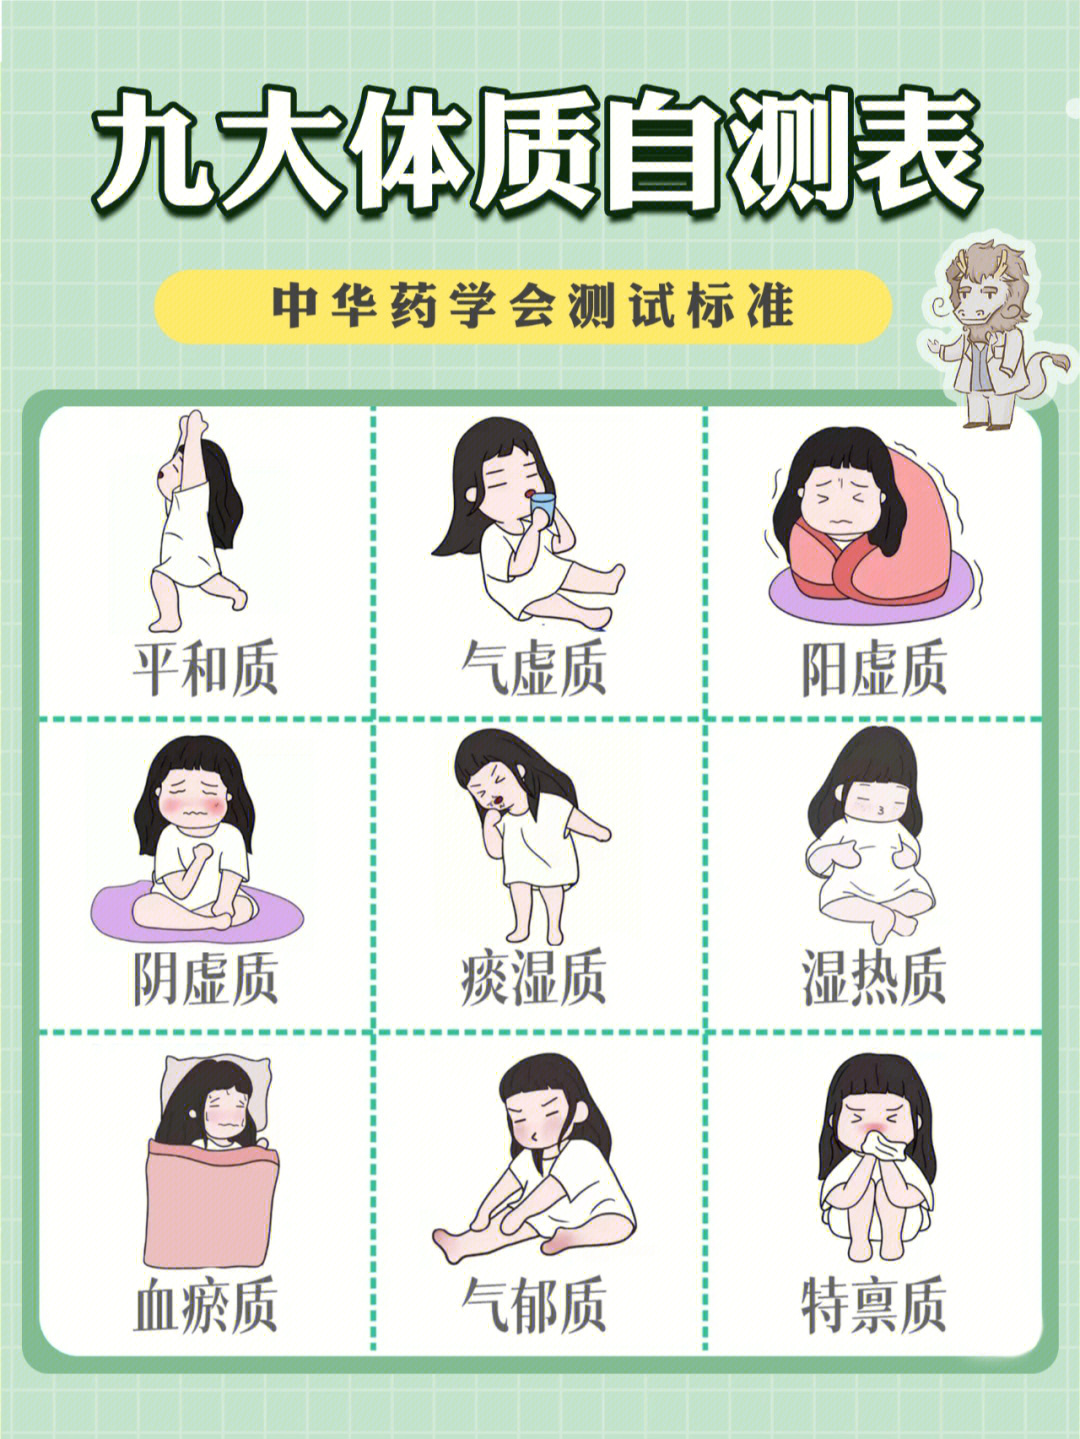 中医的9种体质特征图图片